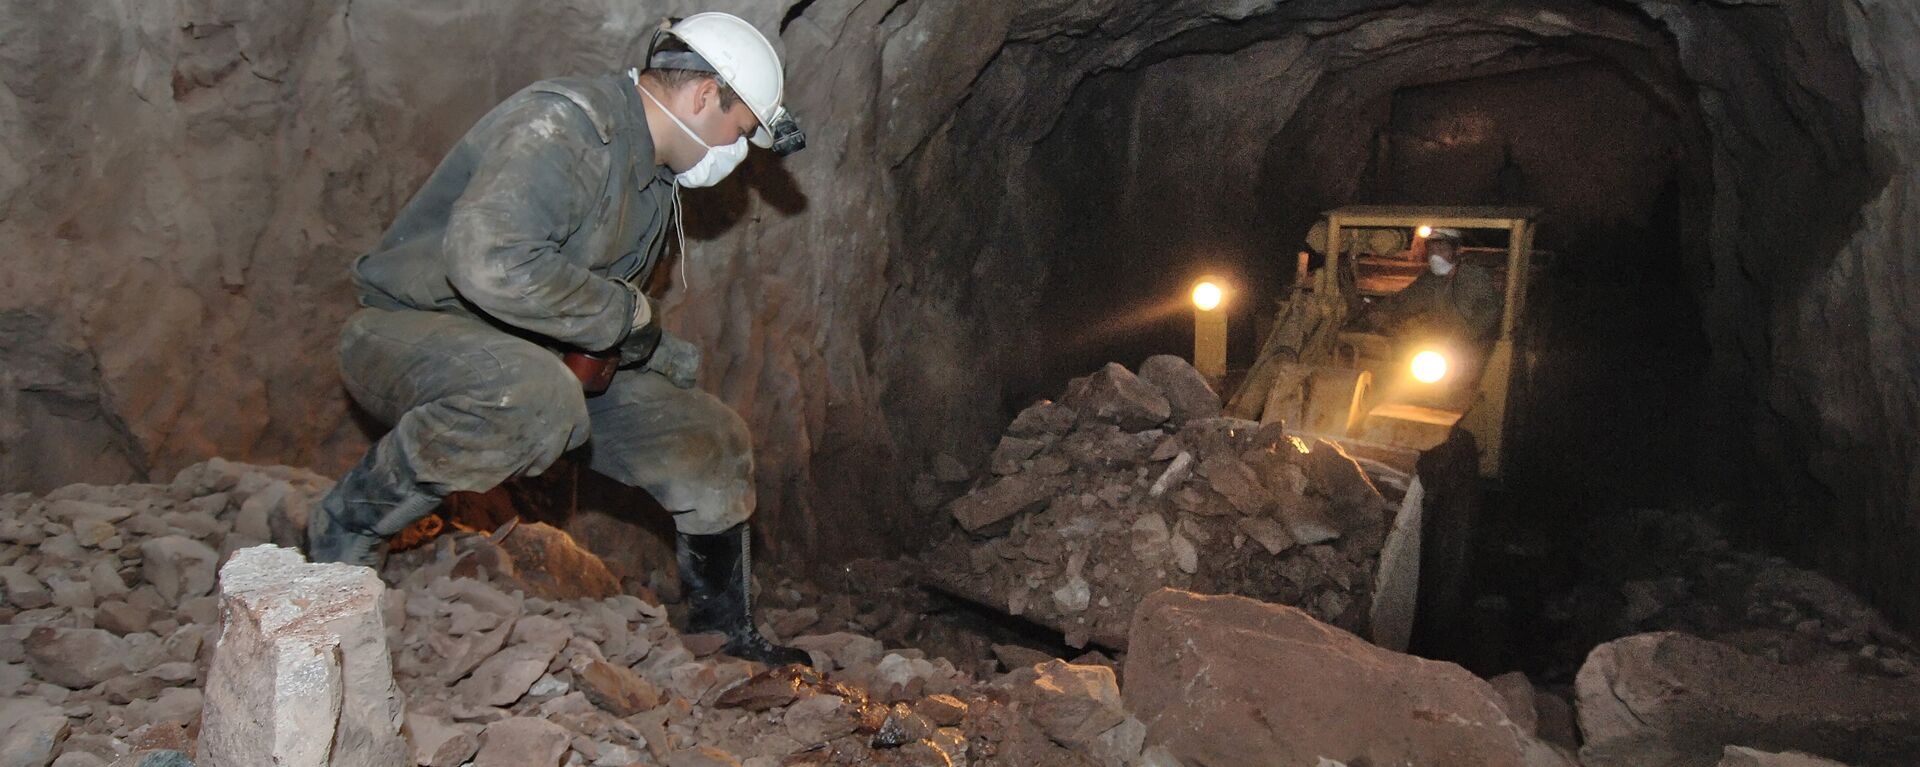 Добыча урановых руд в руднике - Sputnik Узбекистан, 1920, 05.09.2019